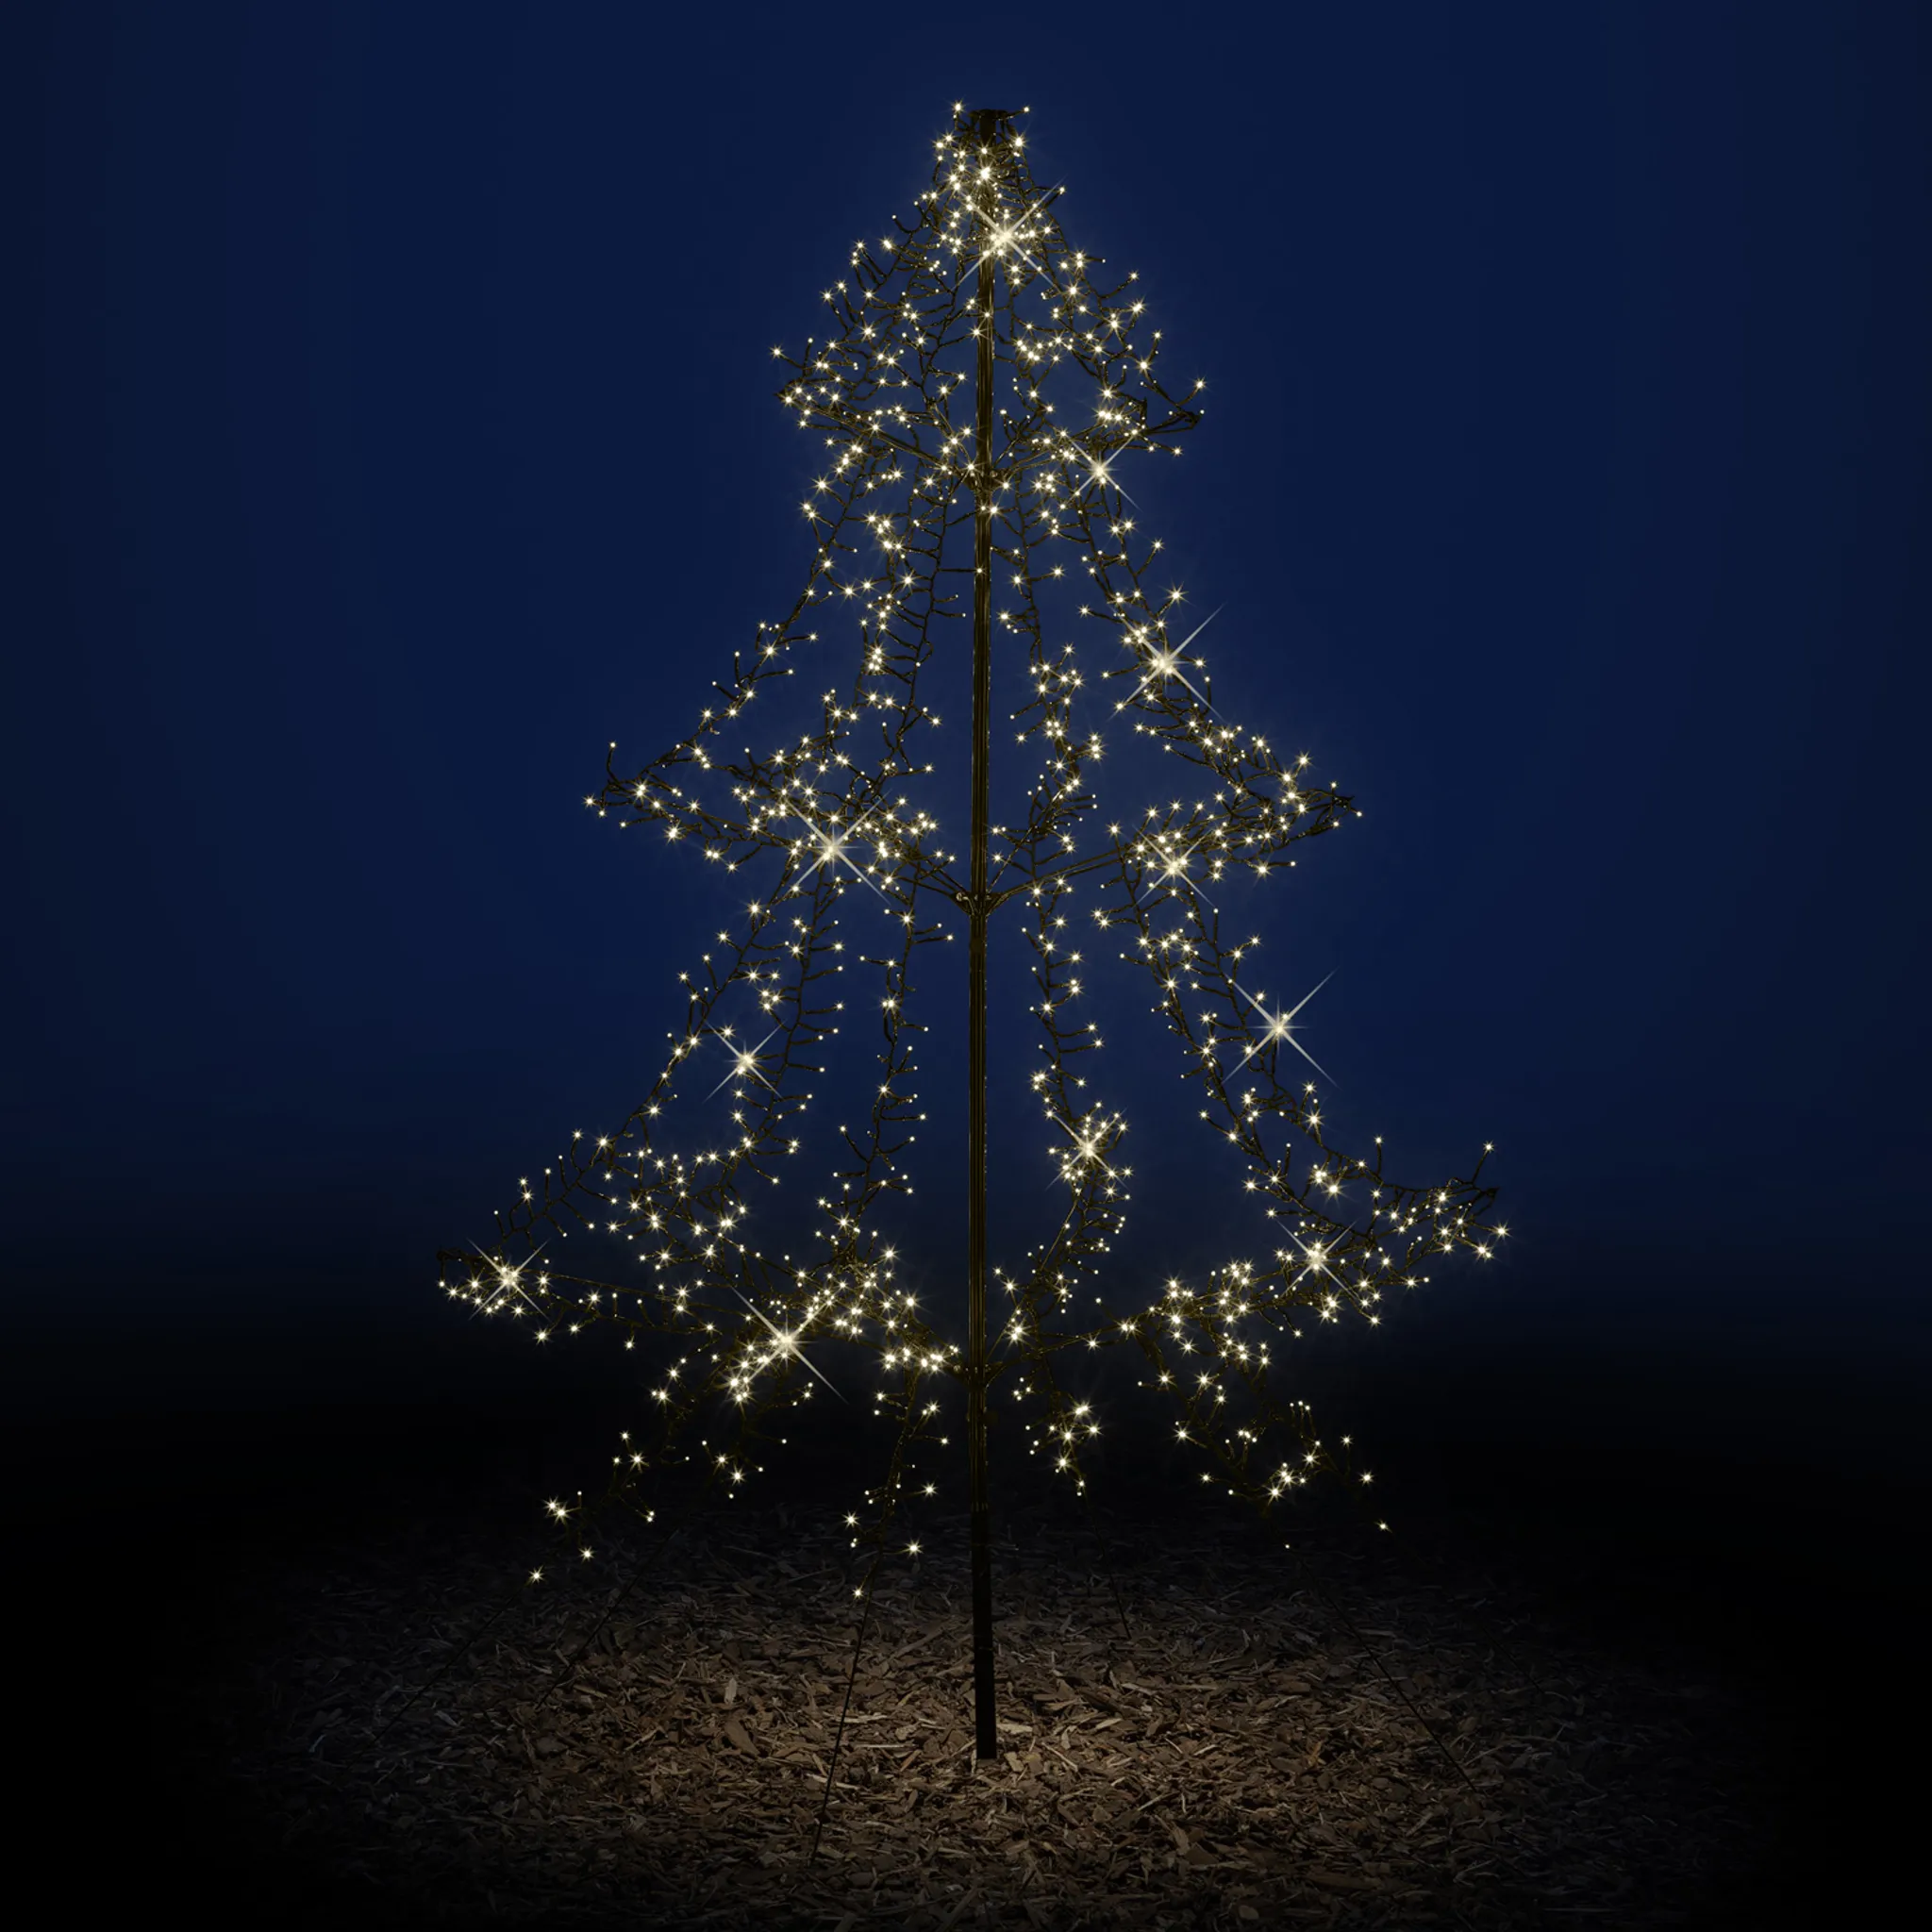 LED Outdoor Weihnachtsbaum - 1200 warmweiße